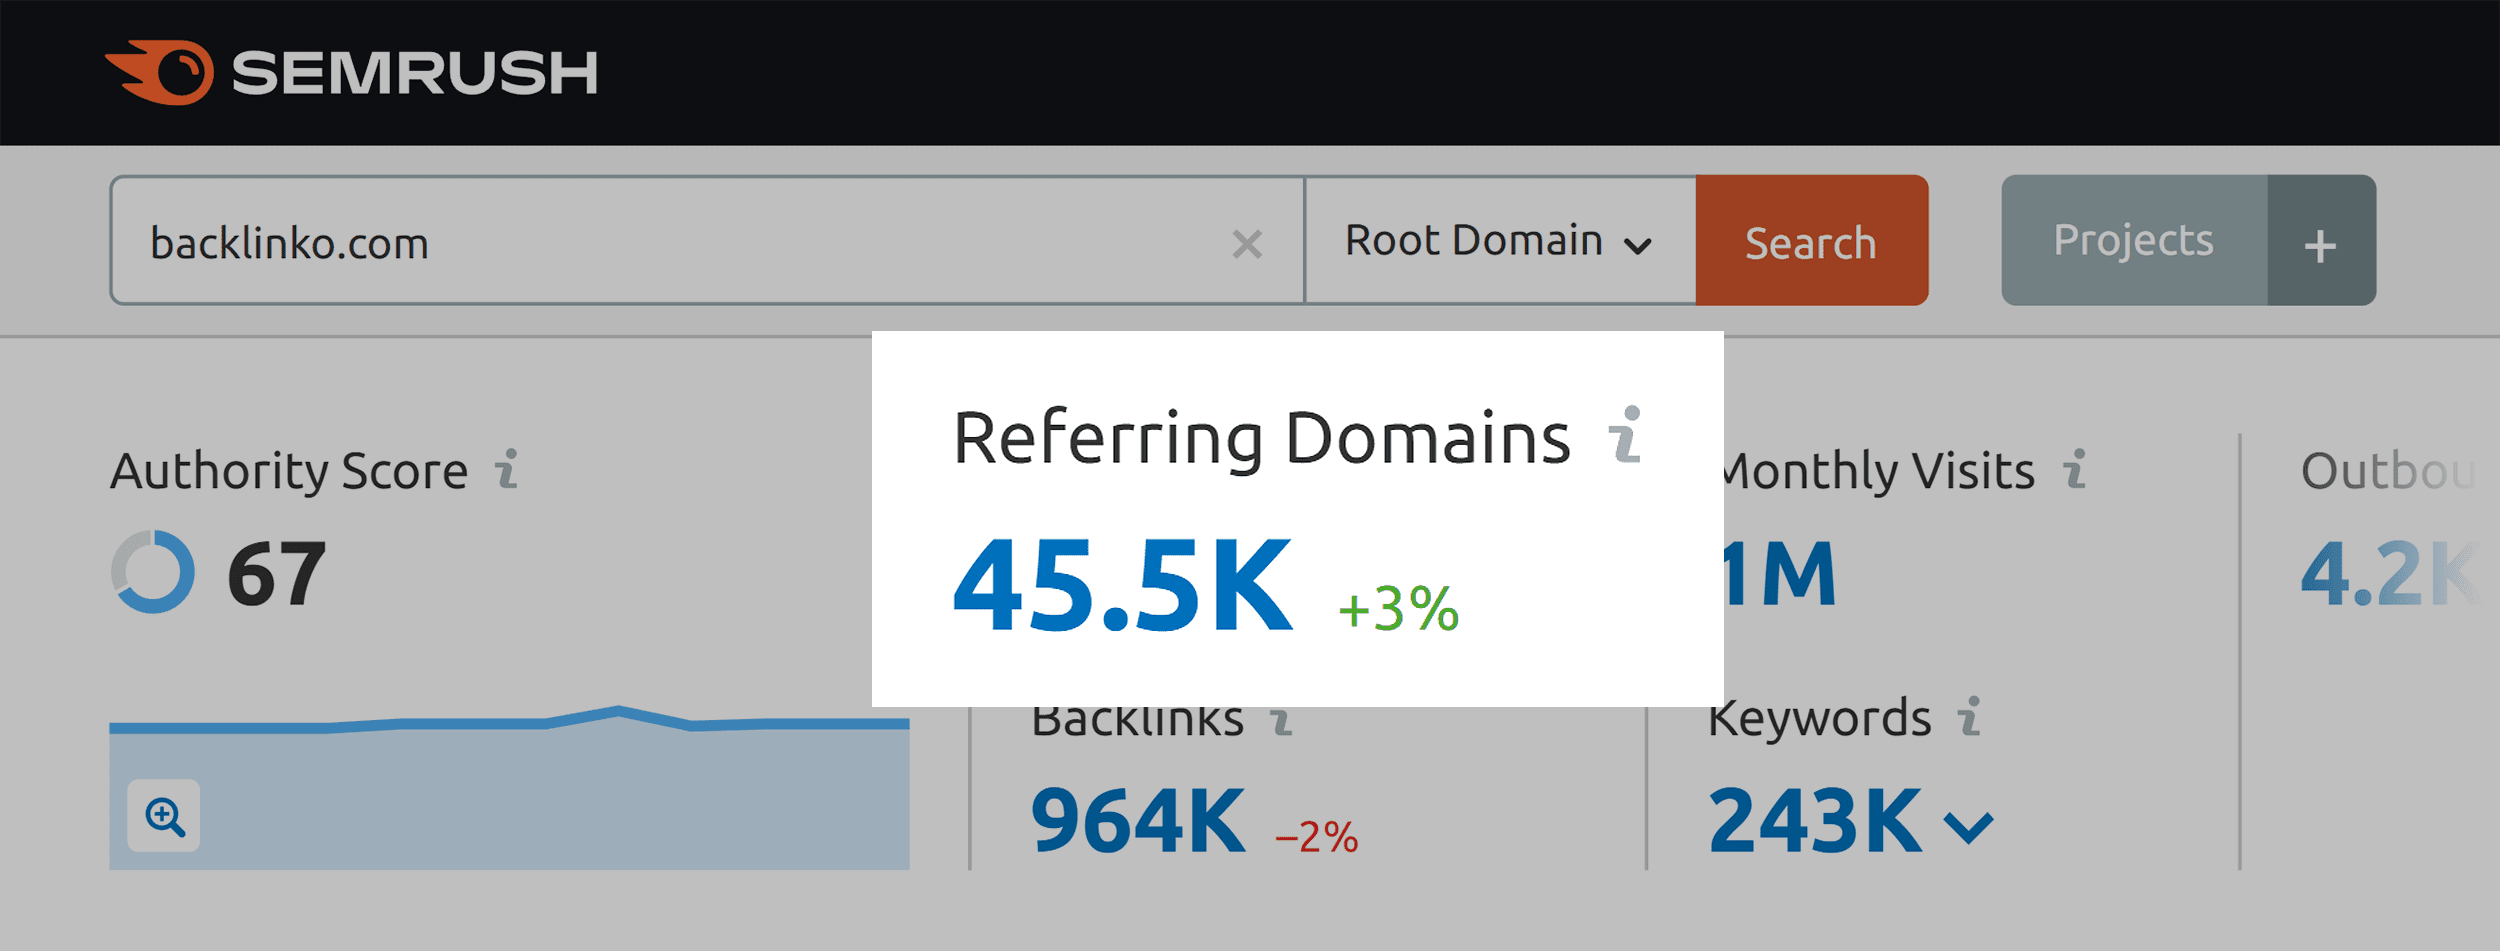 Semrush – Backlinko – Referring domains